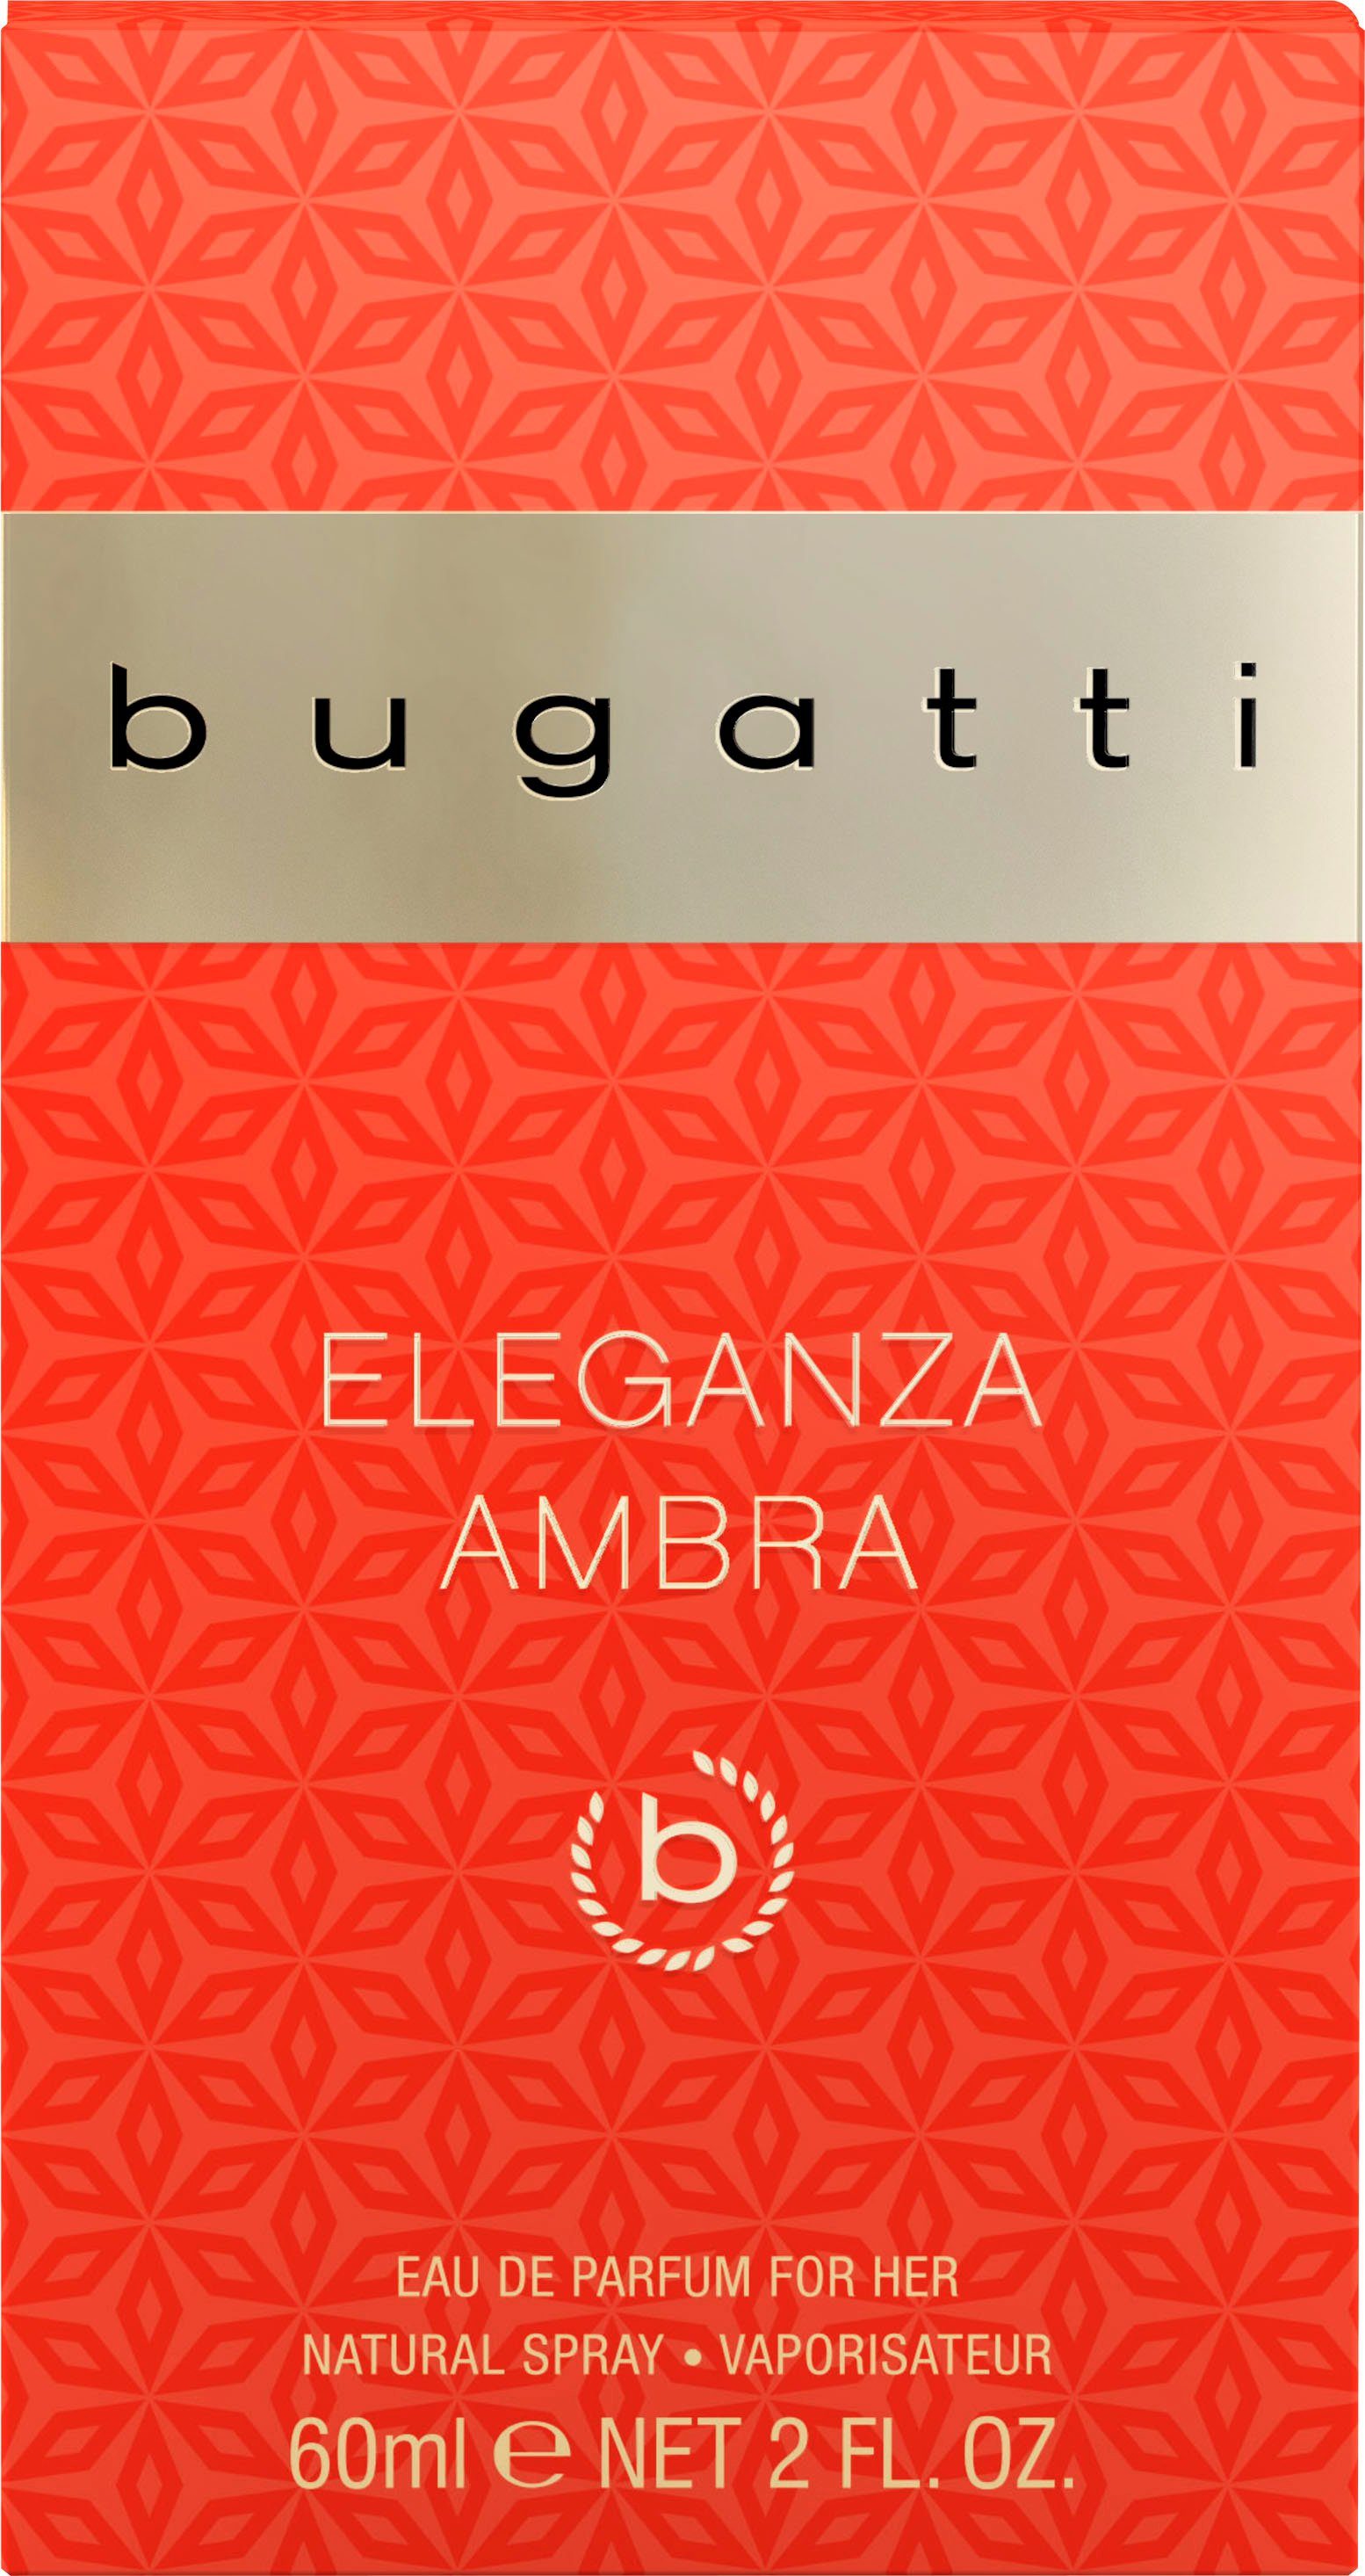 bugatti Eau de EdP for 60 her Parfum BUGATTI Ambra Eleganza ml